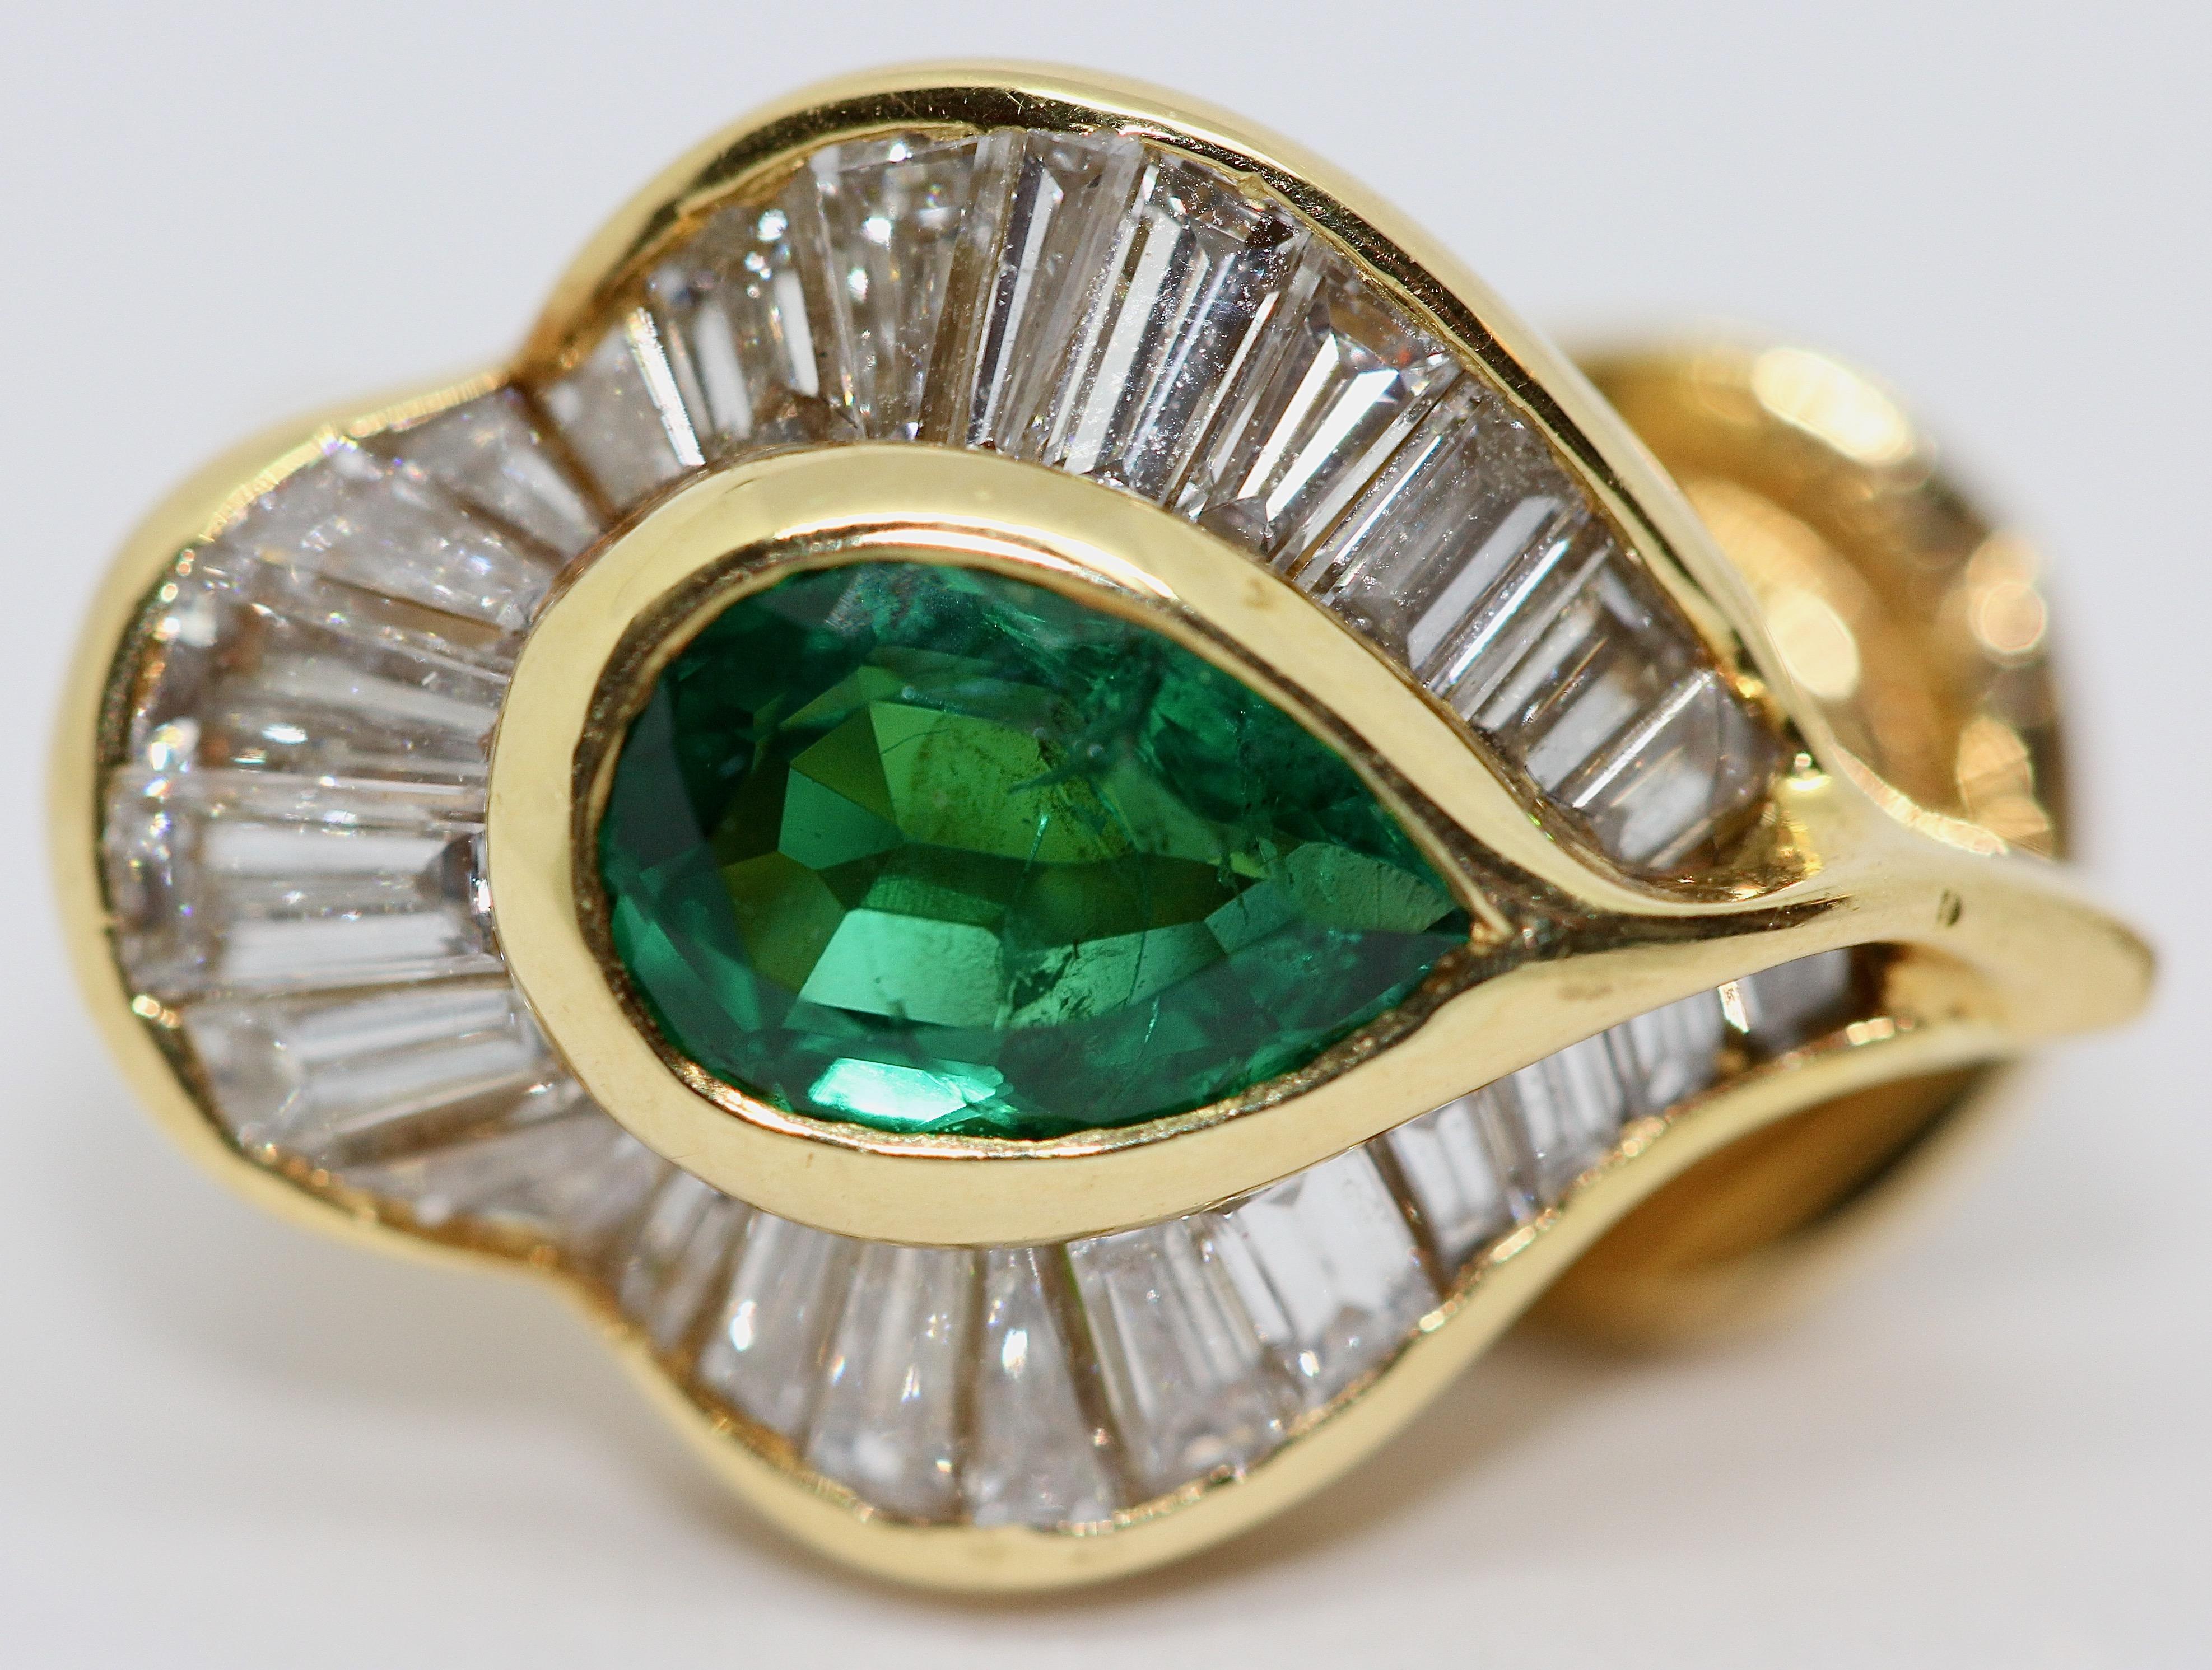 Emerald Stud Earrings with 55 Diamonds, by Hans Stern, 18 Karat Gold 1